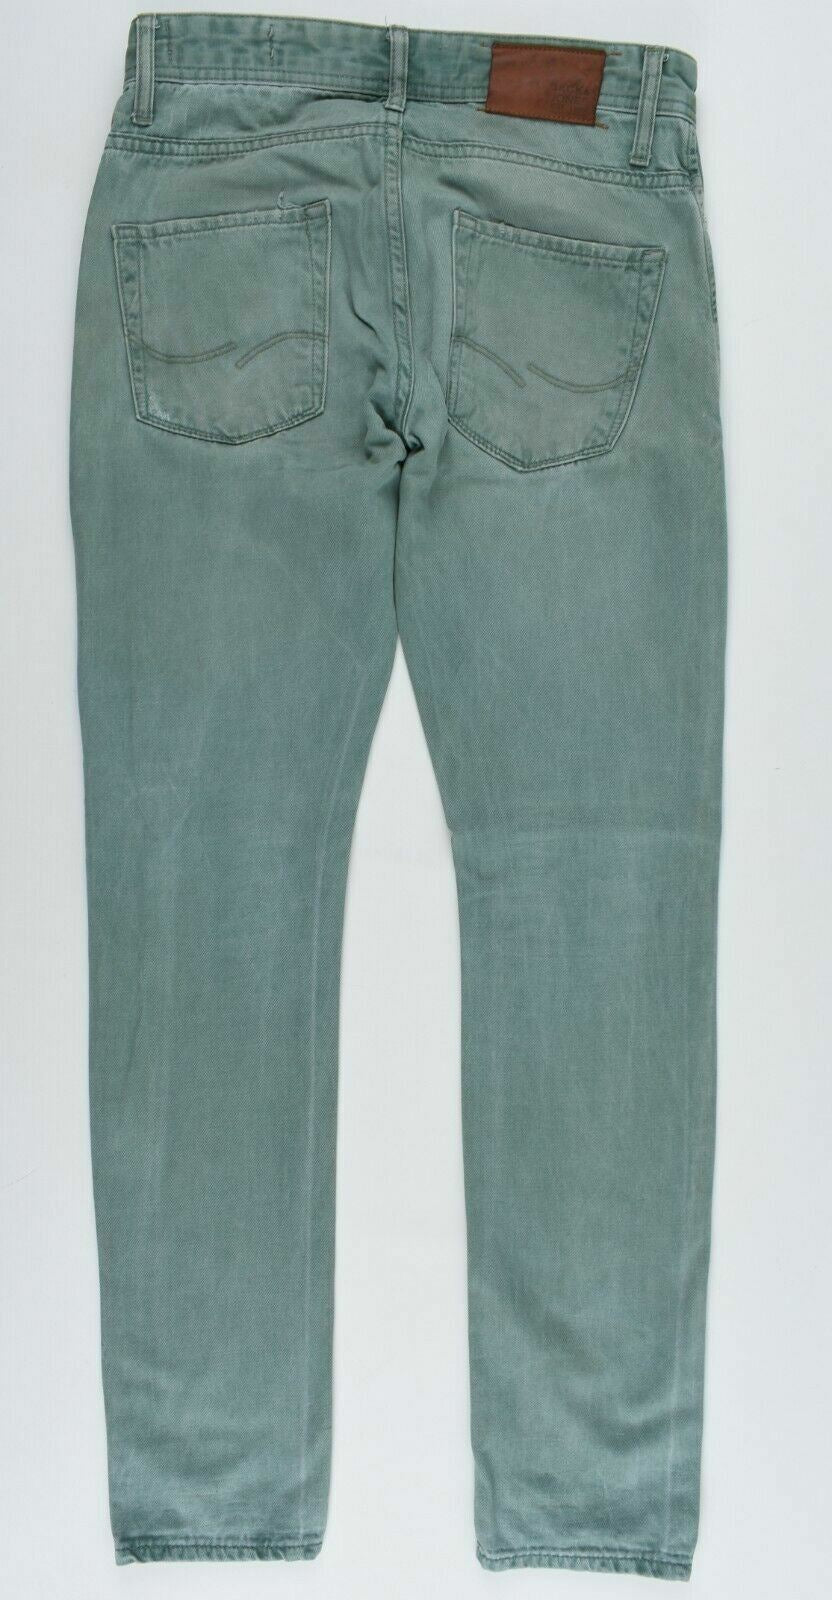 JACK & JONES Men's Green Skinny Jeans, size W28